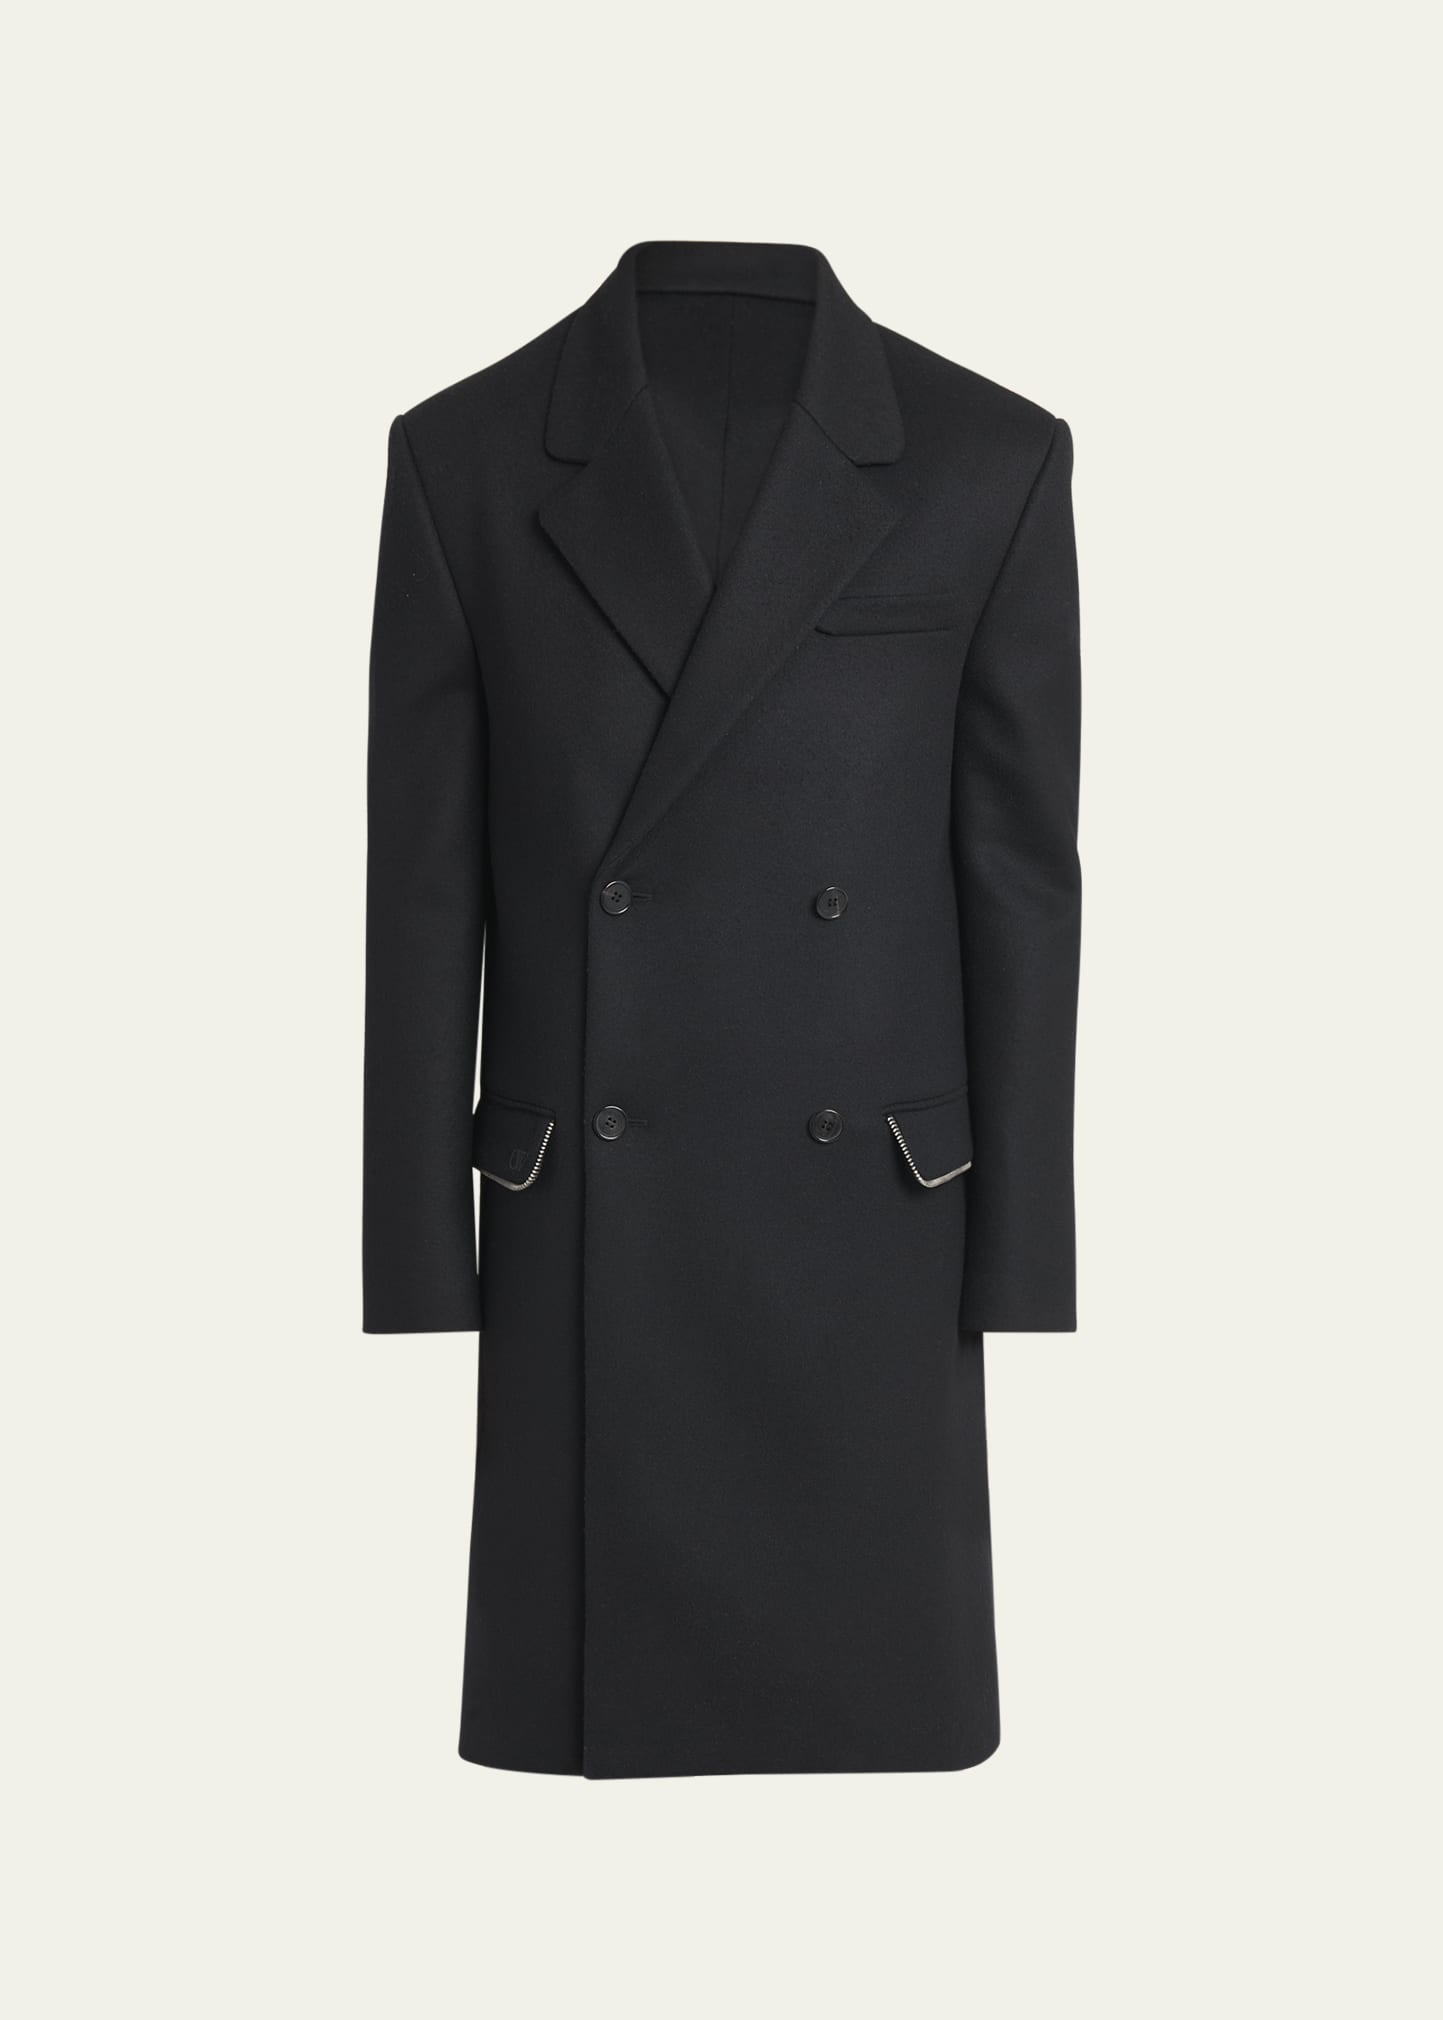 Men's Topcoat with Zipper Details - 1